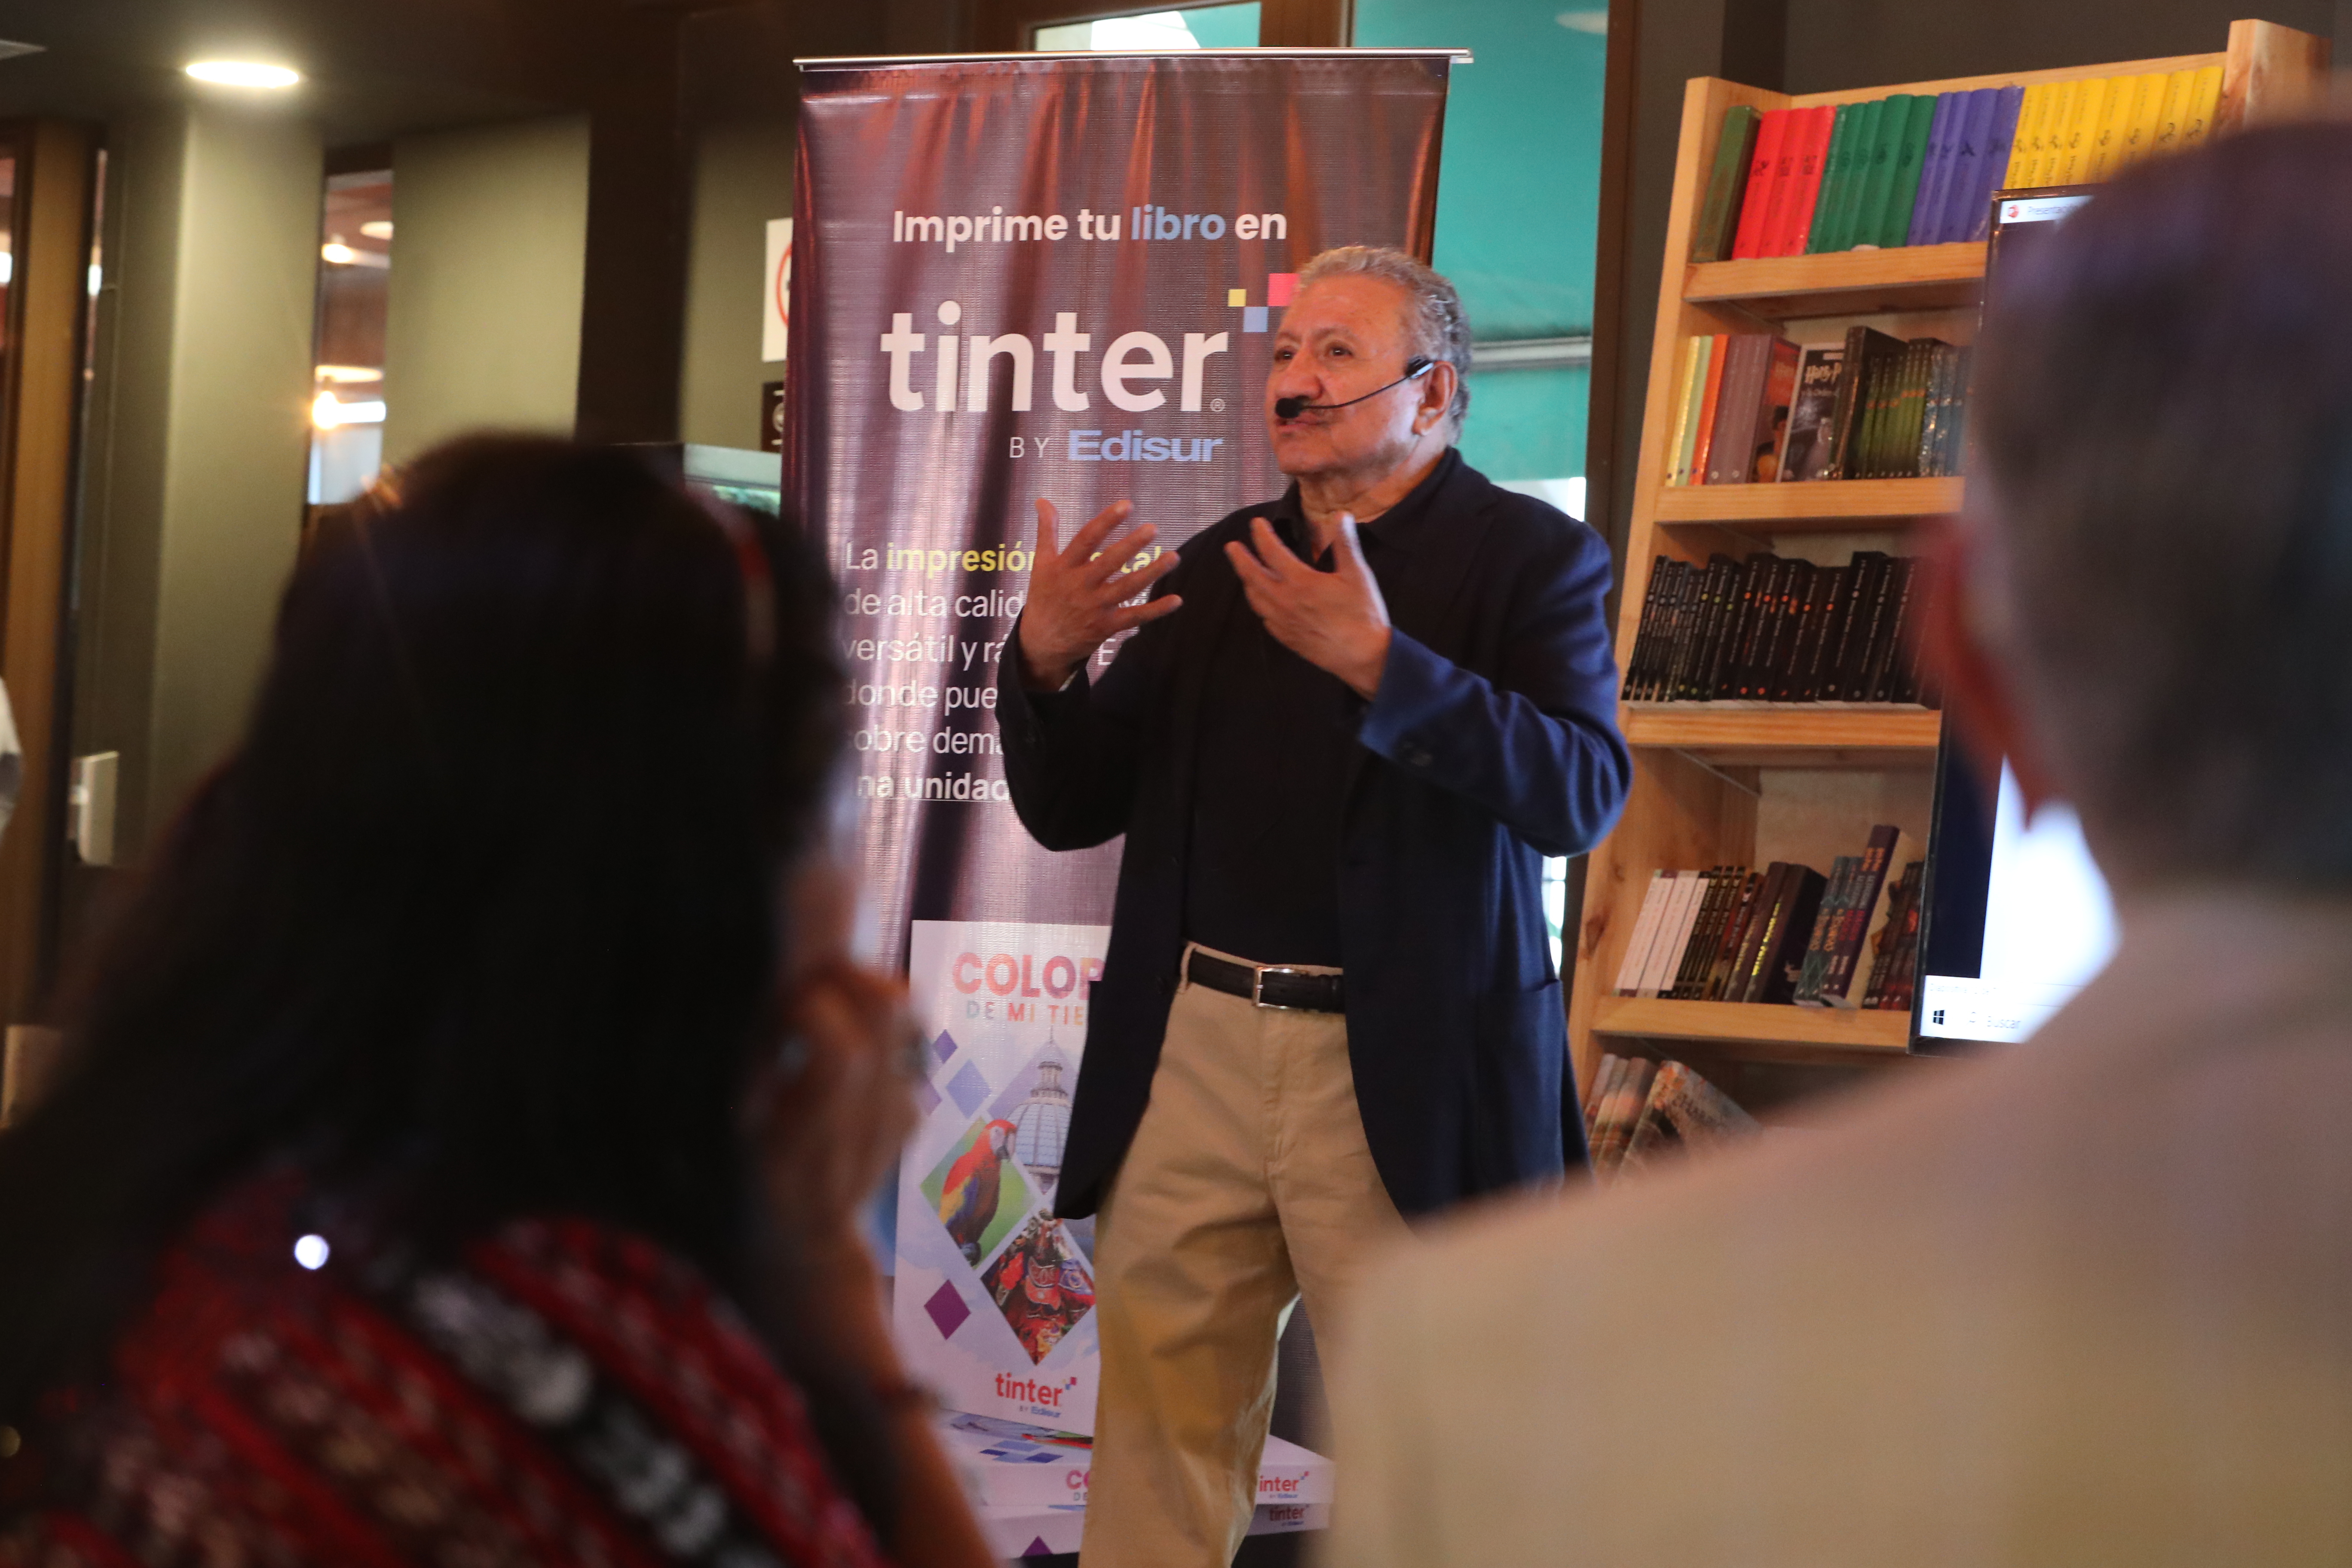 En la librería Sophos, Arturo Monterroso ofrece conferencia sobre redacción eficaz en una actividad organizada por Tinter, de Edisur.   (Foto Prensa Libre: María José Bonilla)